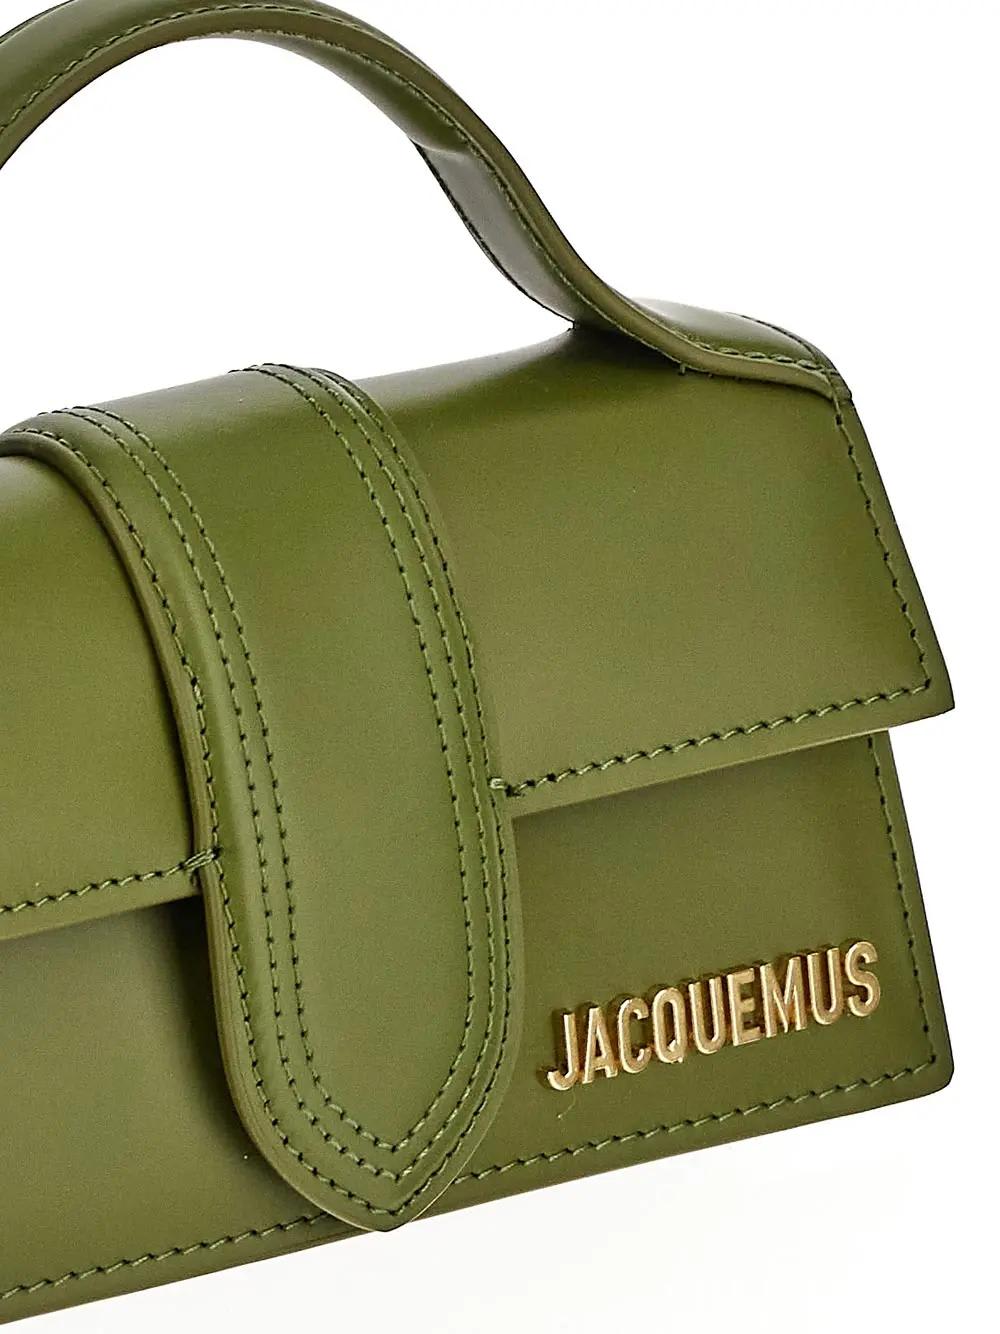 Shop Jacquemus Le Bambino Bag In Brown